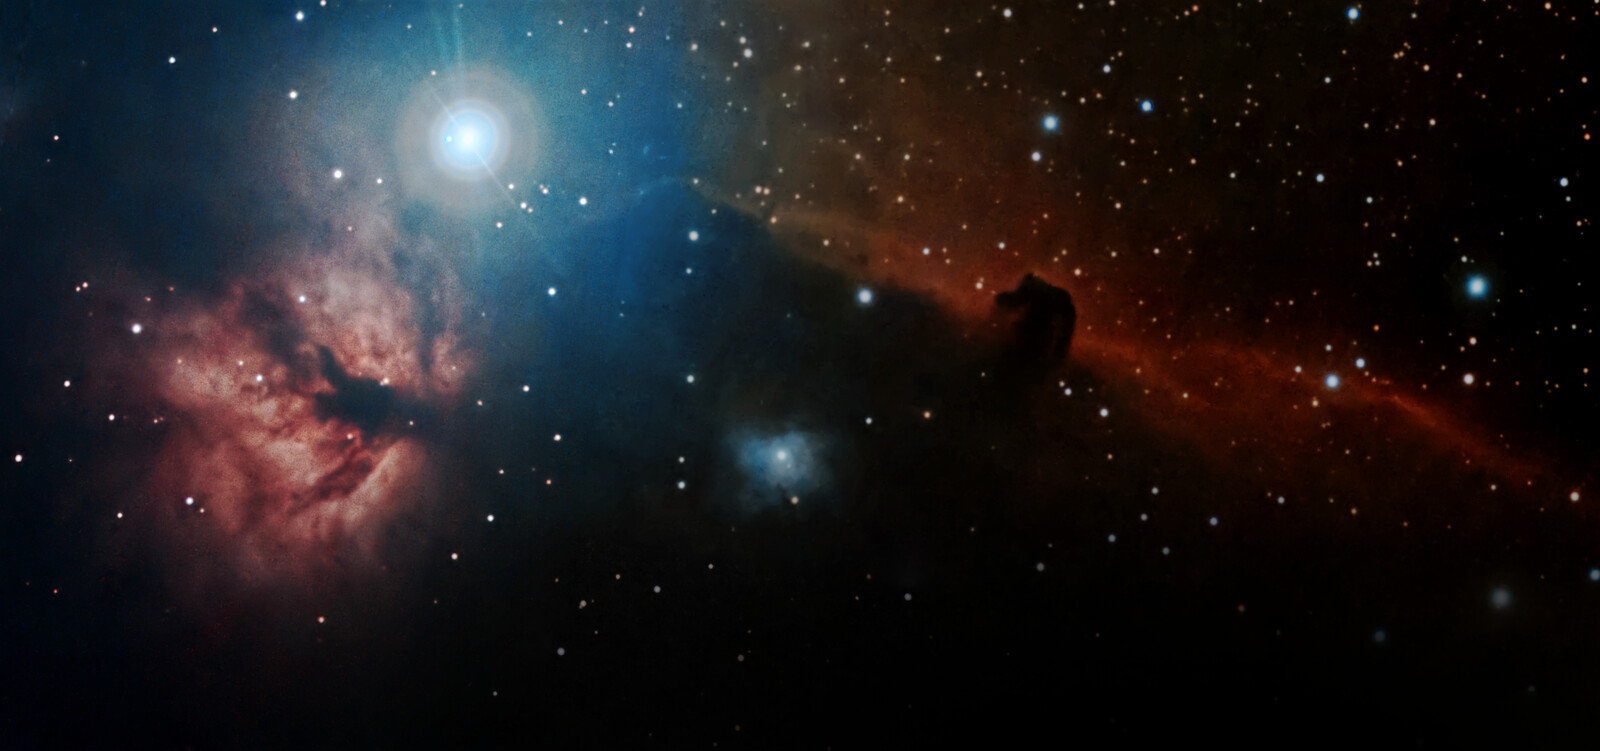 Horse head and Flame nebulae (IC434, NGC2024)